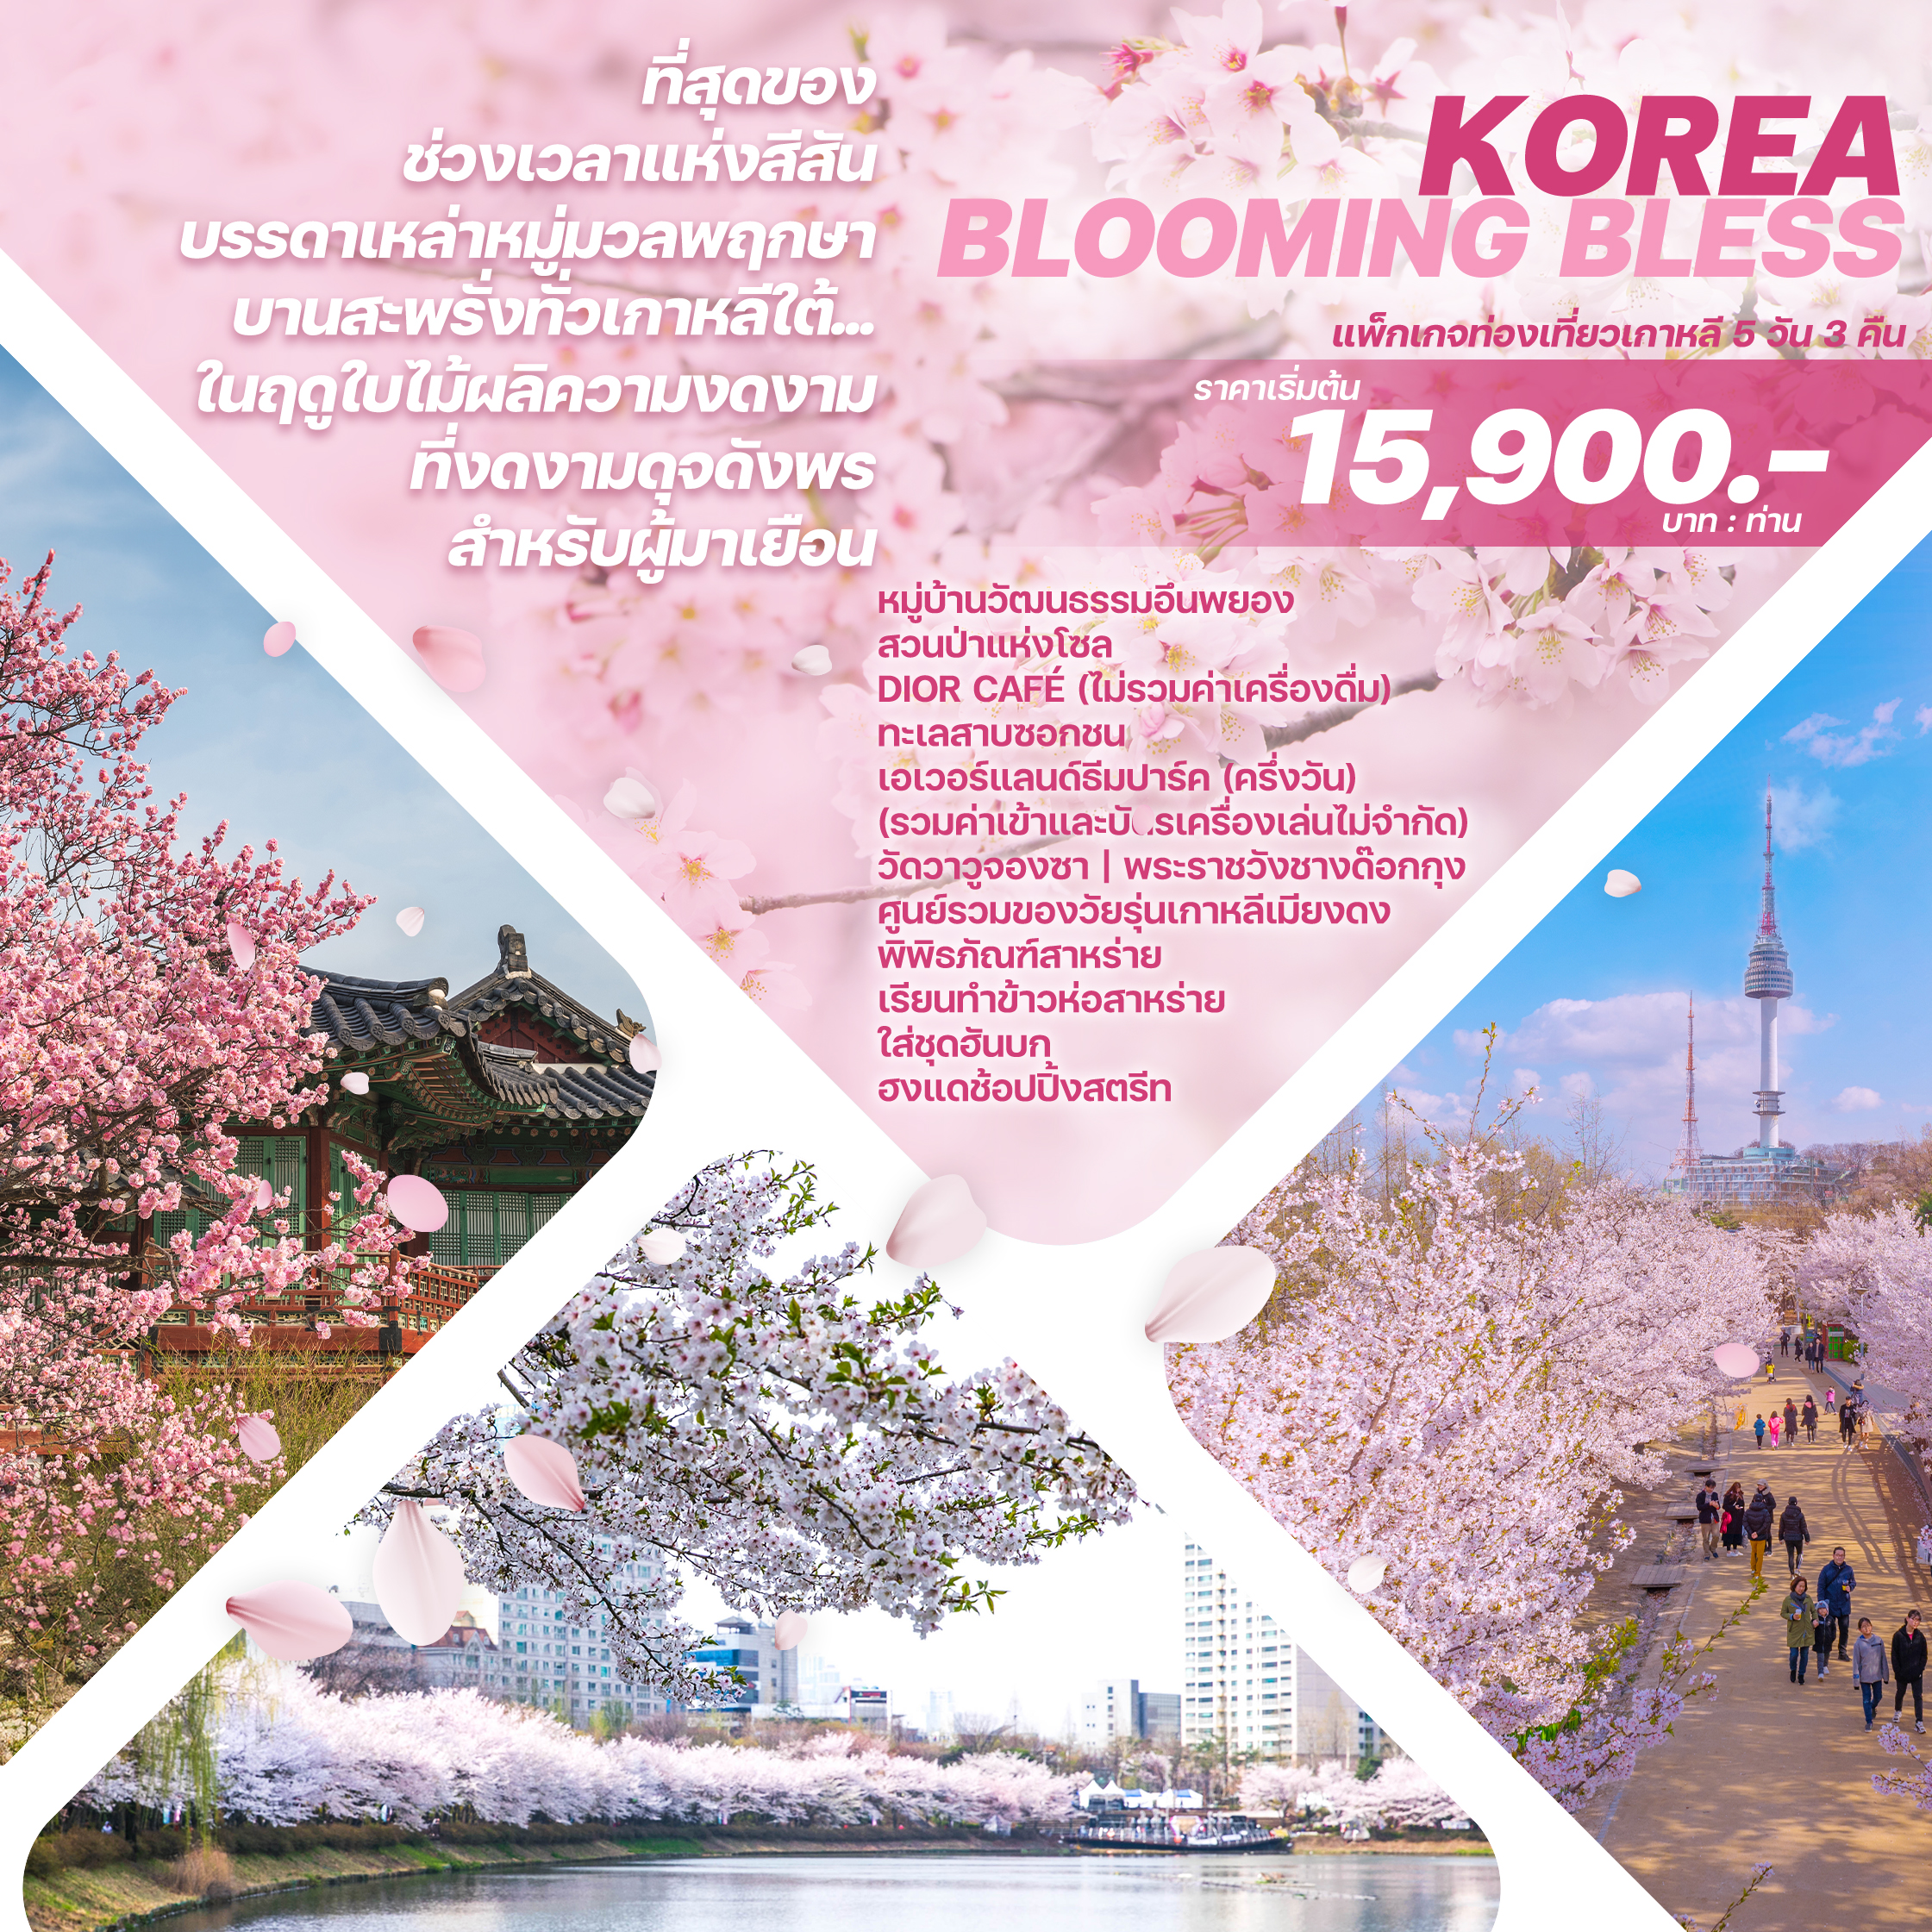  ทัวร์เกาหลี KOREA BLOOMING BLESS 5D3N  BY 7C or BX